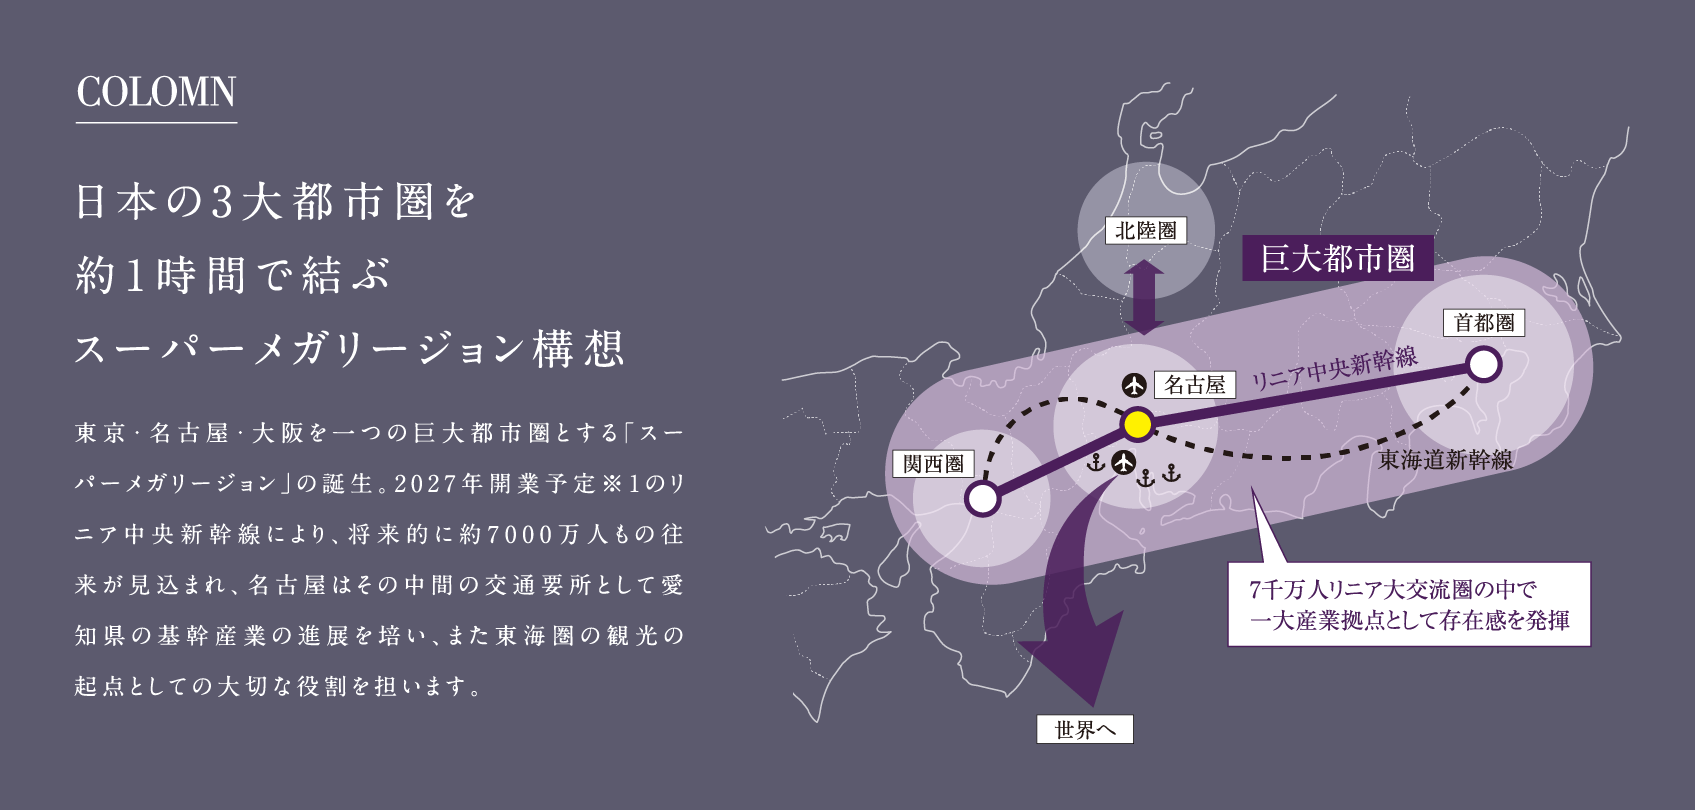 COLOMN 日本の3大都市圏を約1時間で結ぶスーパーメガリージョン構想